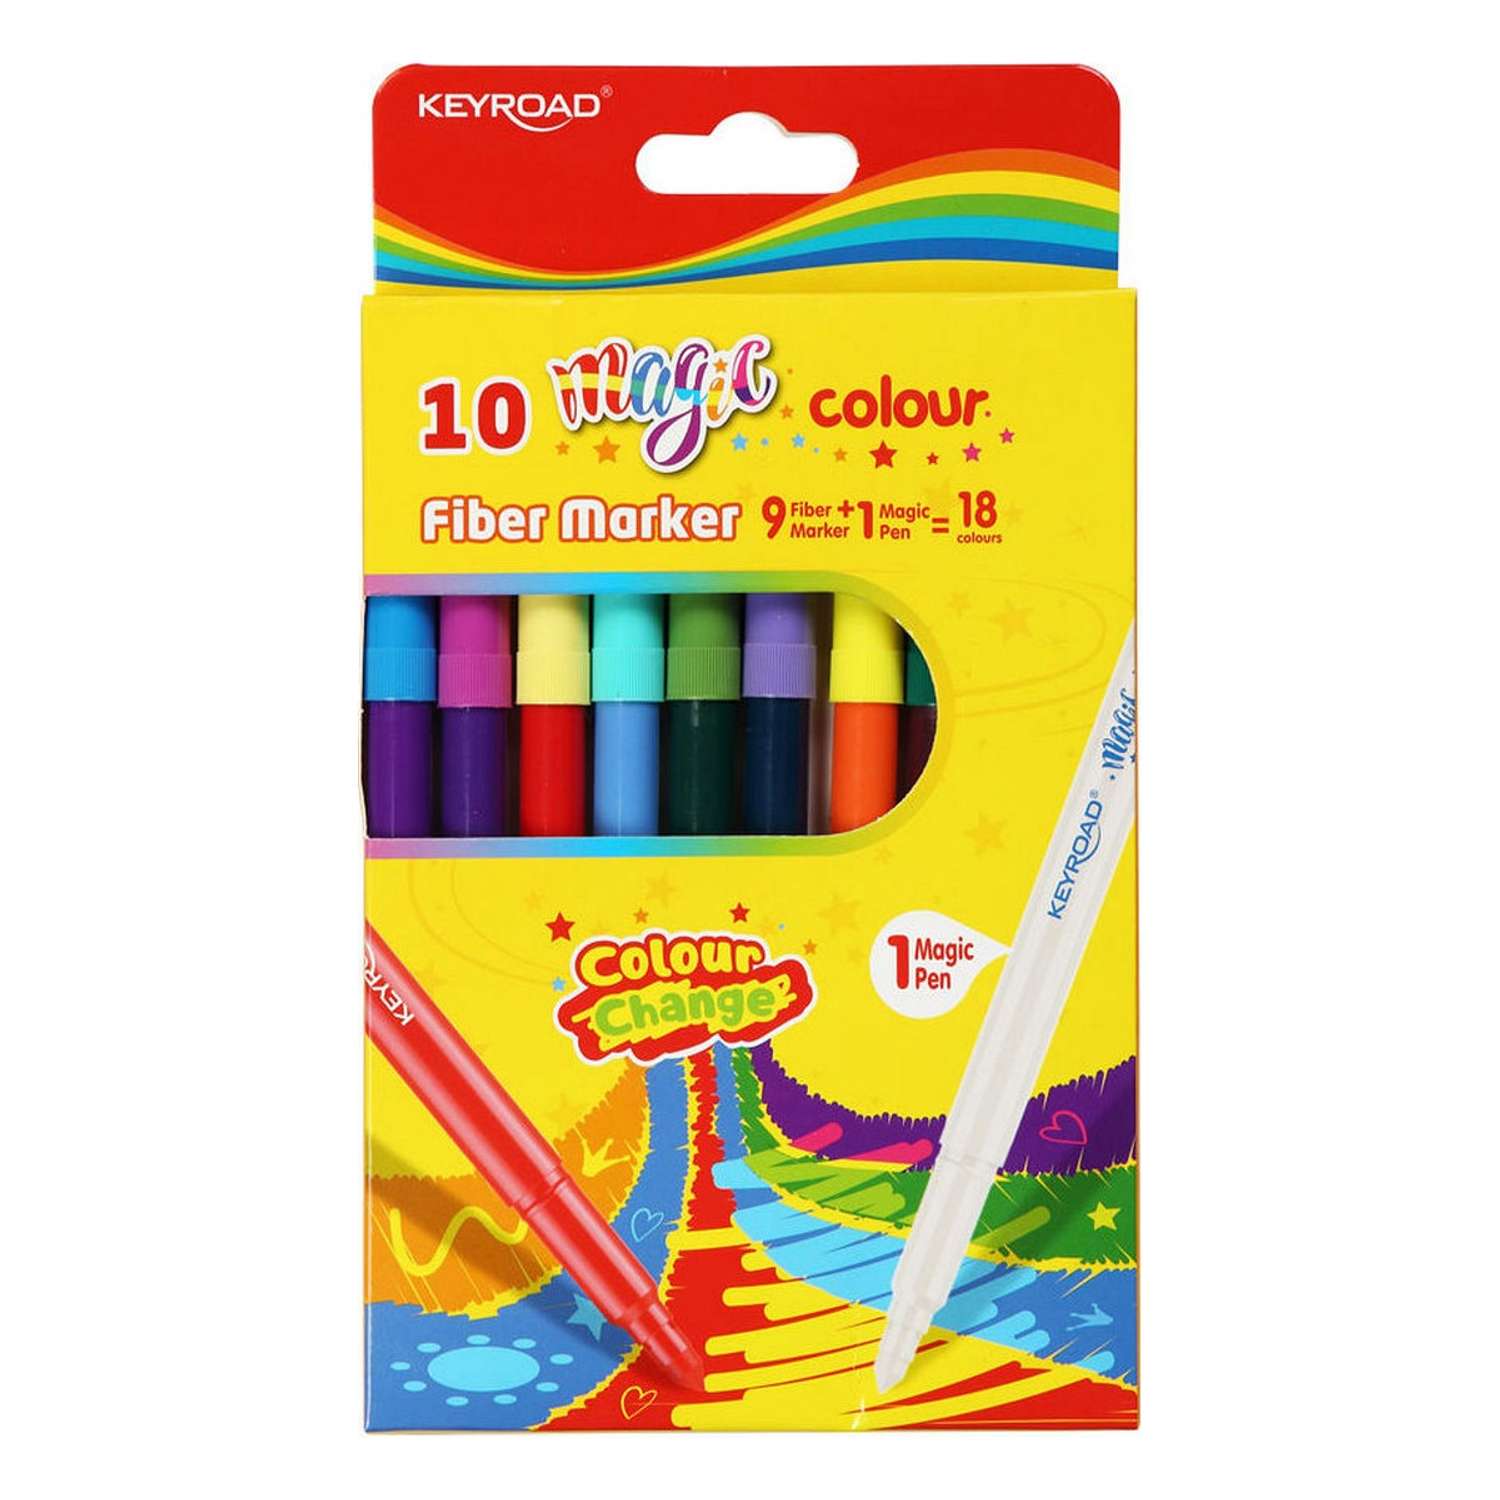 Фломастеры KEYROAD Magic 10 шт. 9 фломастеров и 1 Magic pen. 18 цветов картонный футляр - фото 1